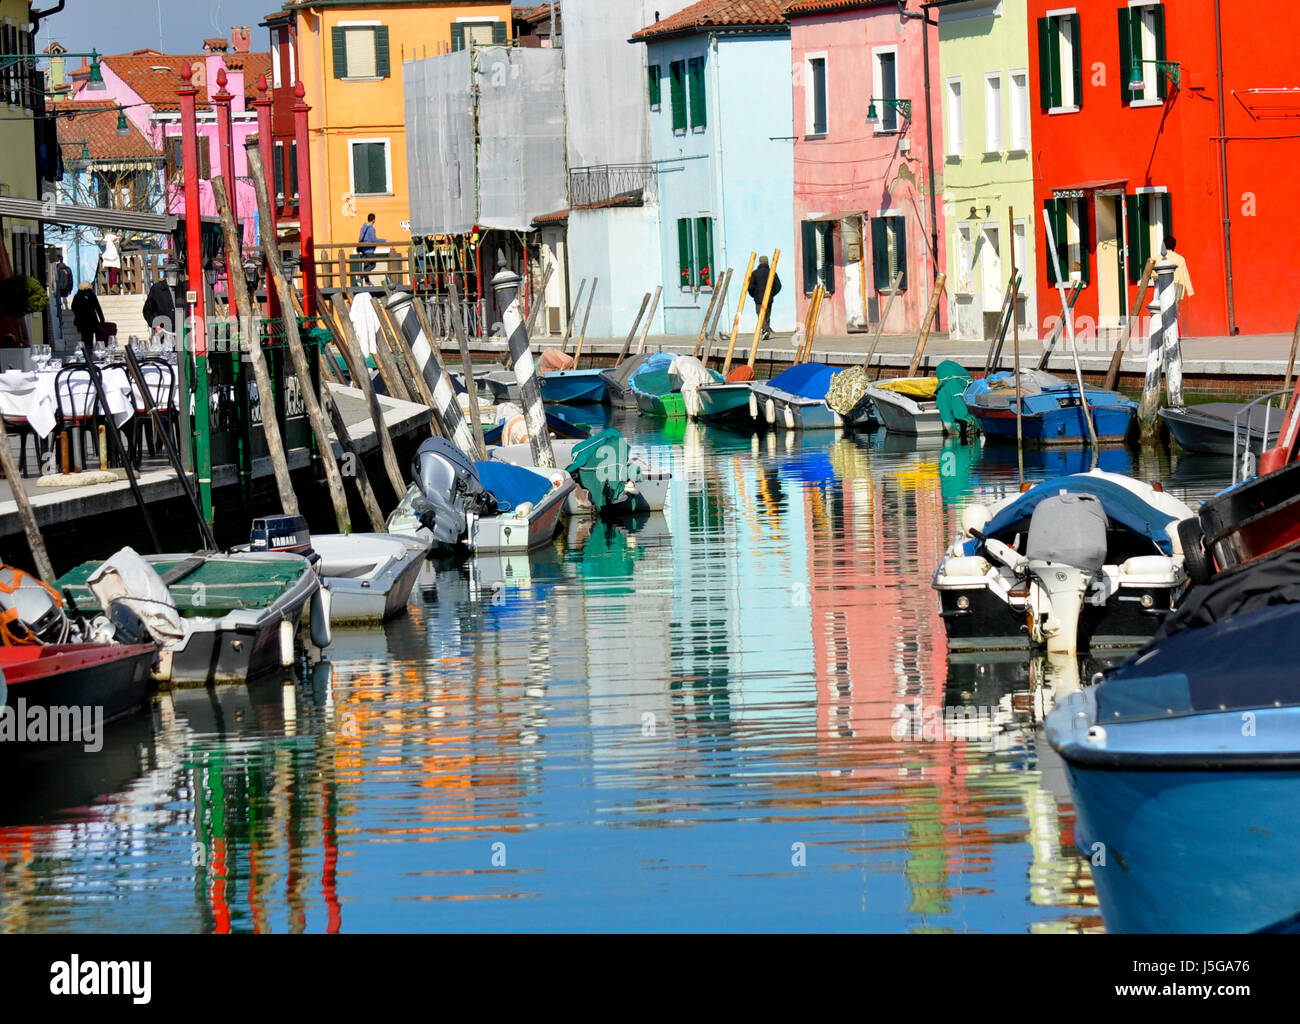 Réflexion sur l'eau de la maisons colorées de l'île Burano Italie- Banque D'Images